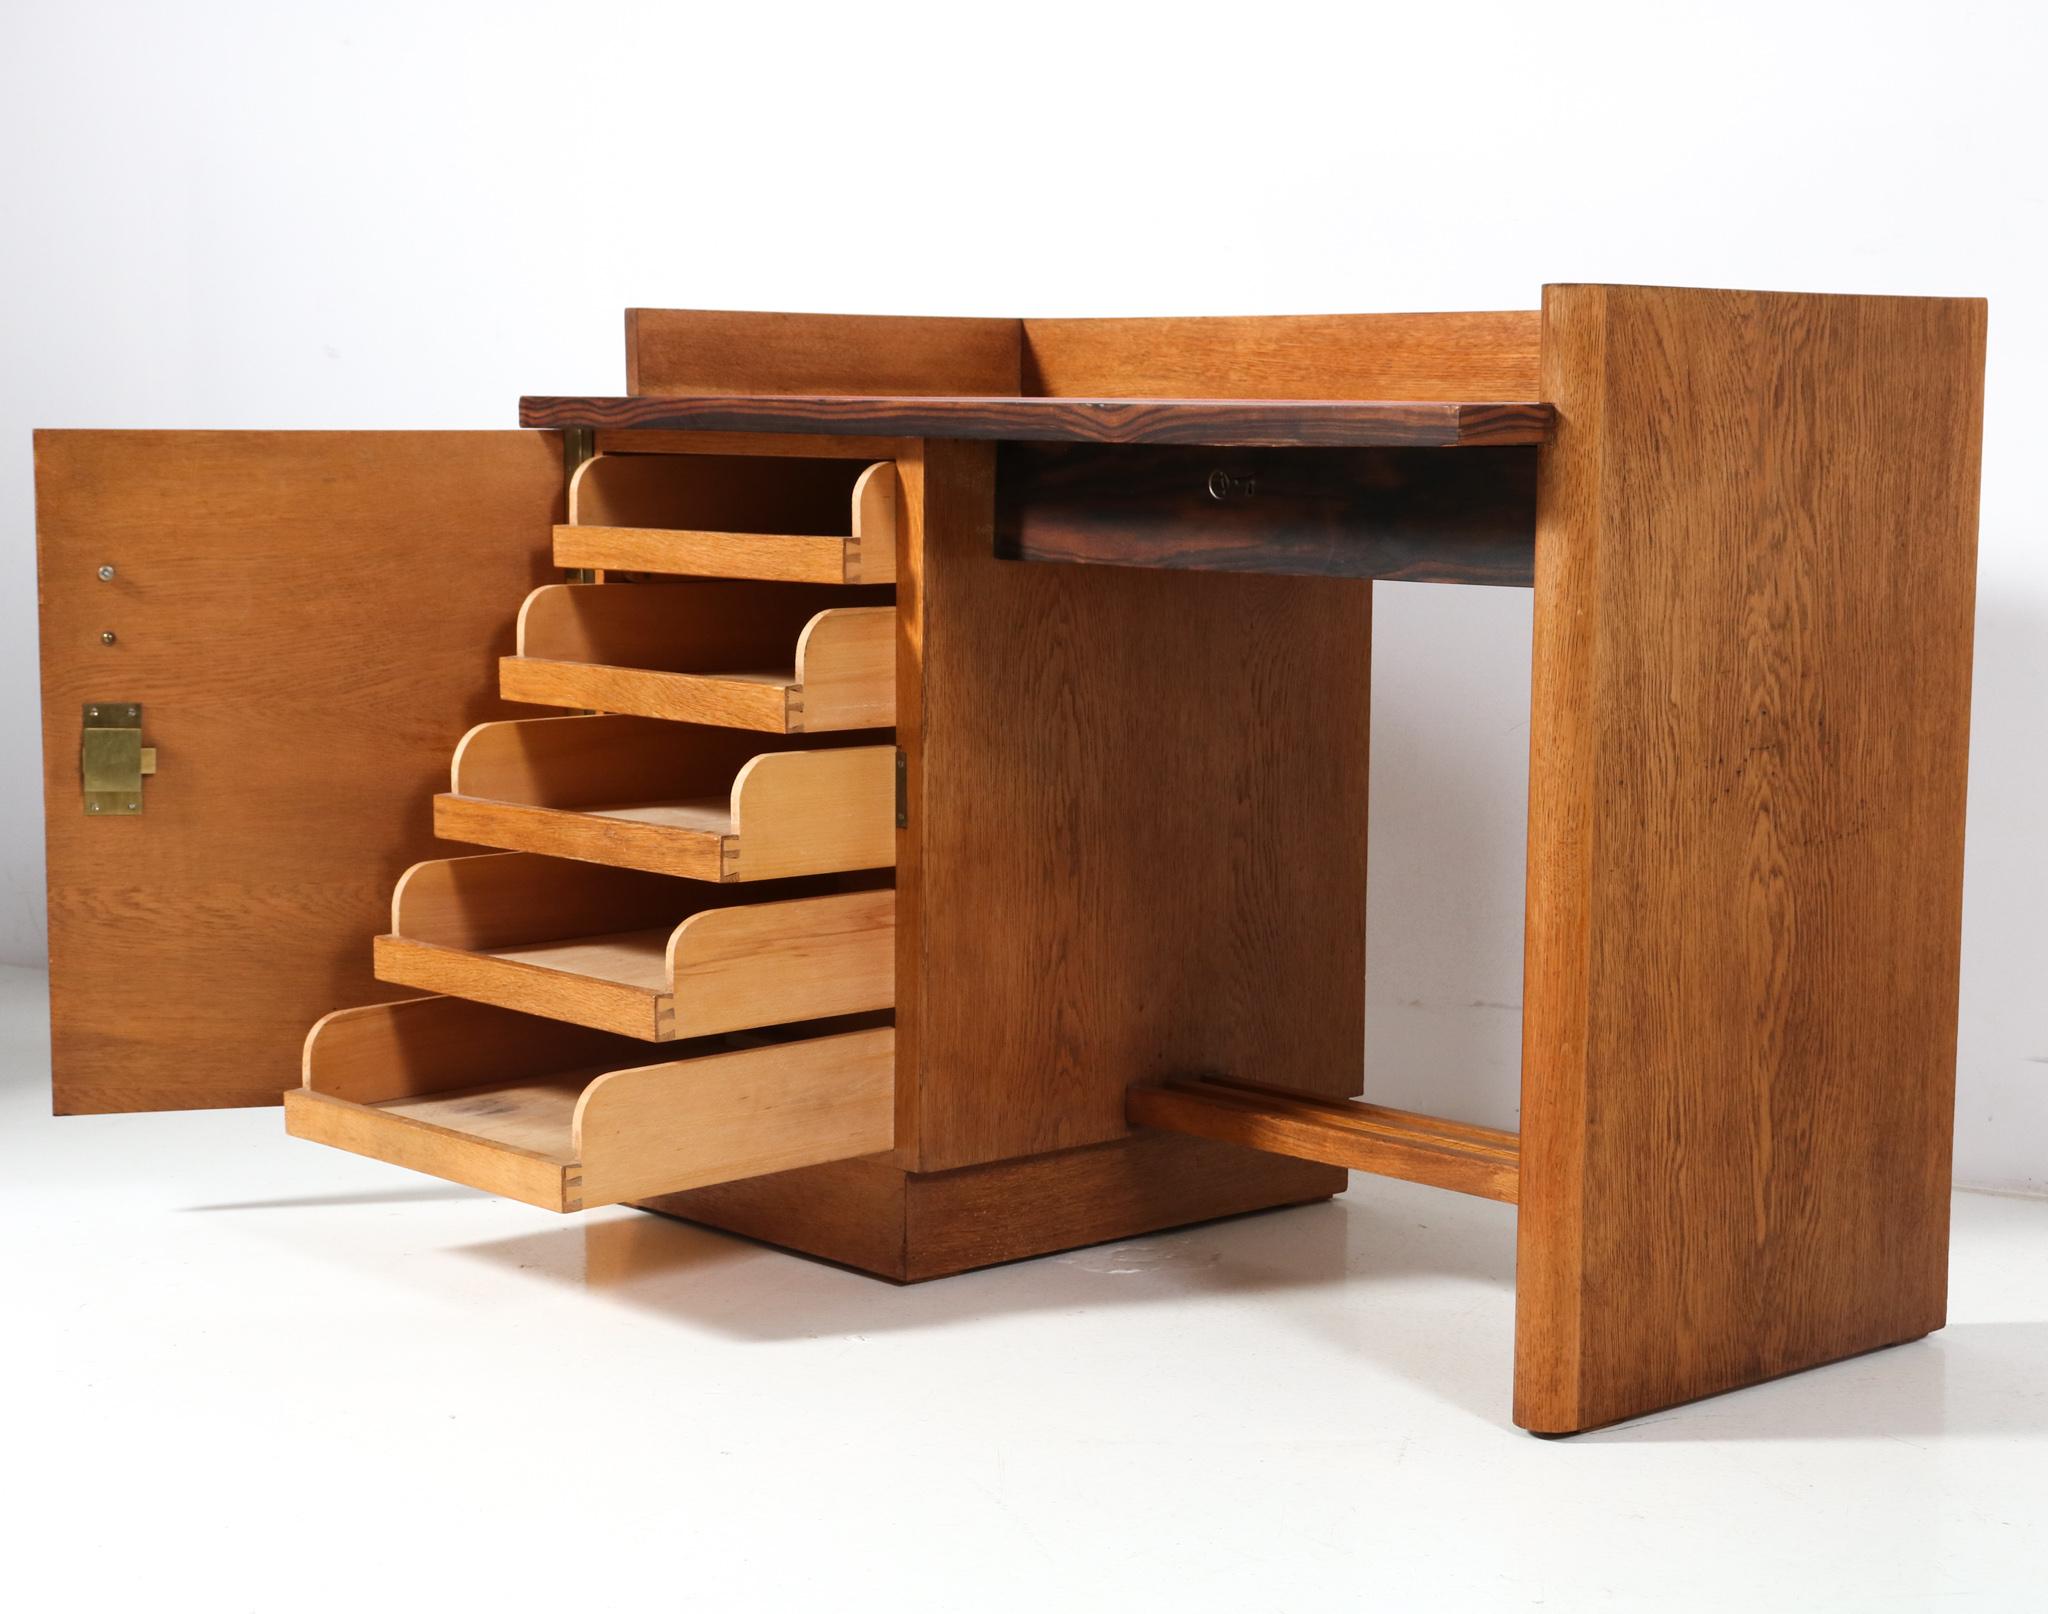 Modernistischer Art-Déco-Schreibtisch aus Eiche von Jan Brunott, 1920er Jahre (Niederländisch)